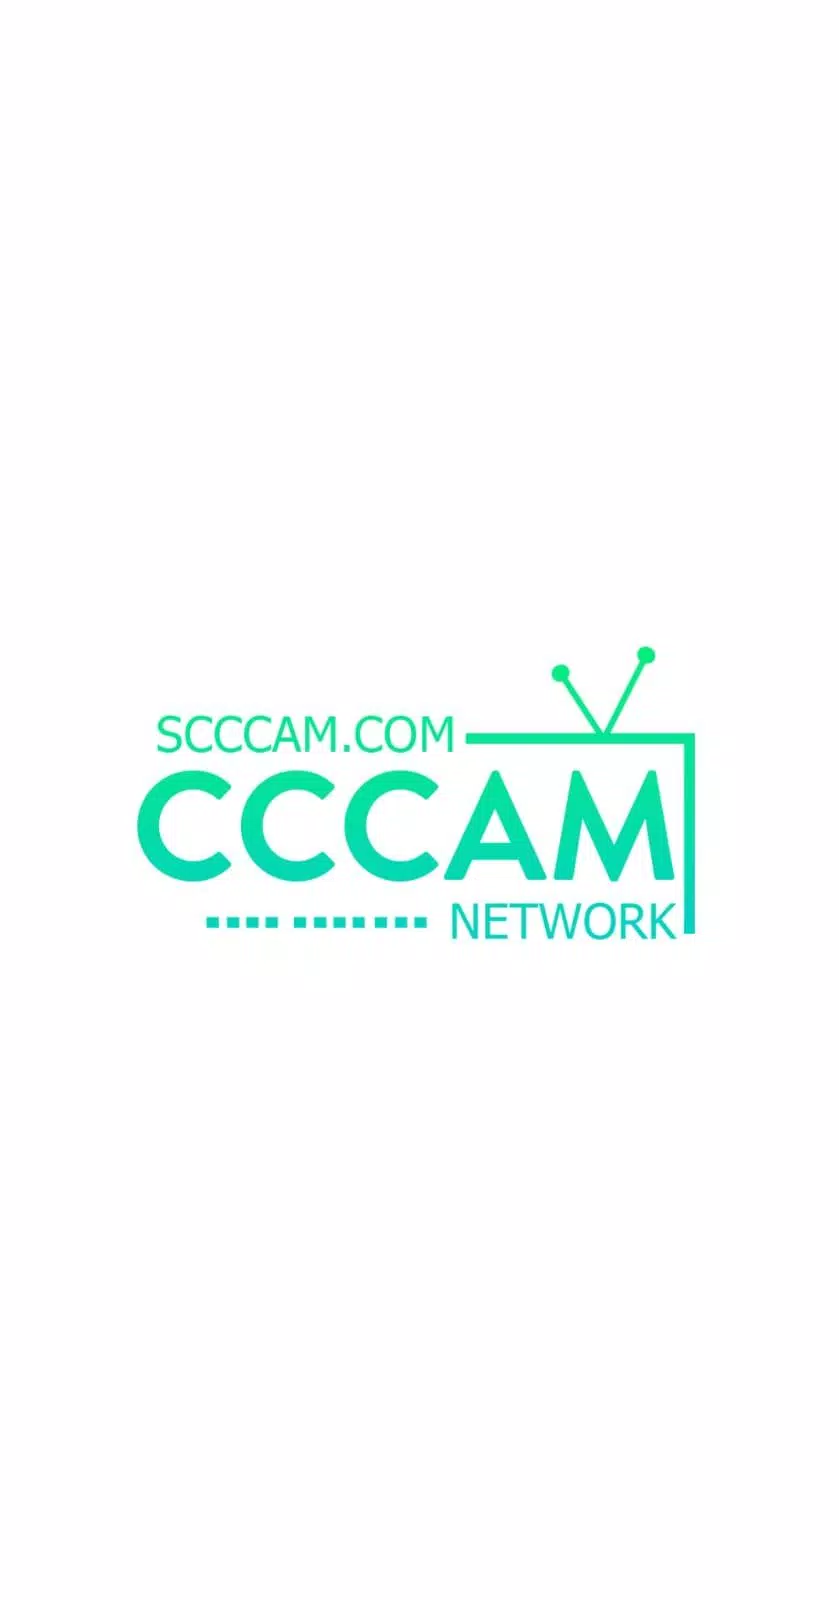 5 Days Free CCcam - Free CCcam Server Generator APK pour Android Télécharger